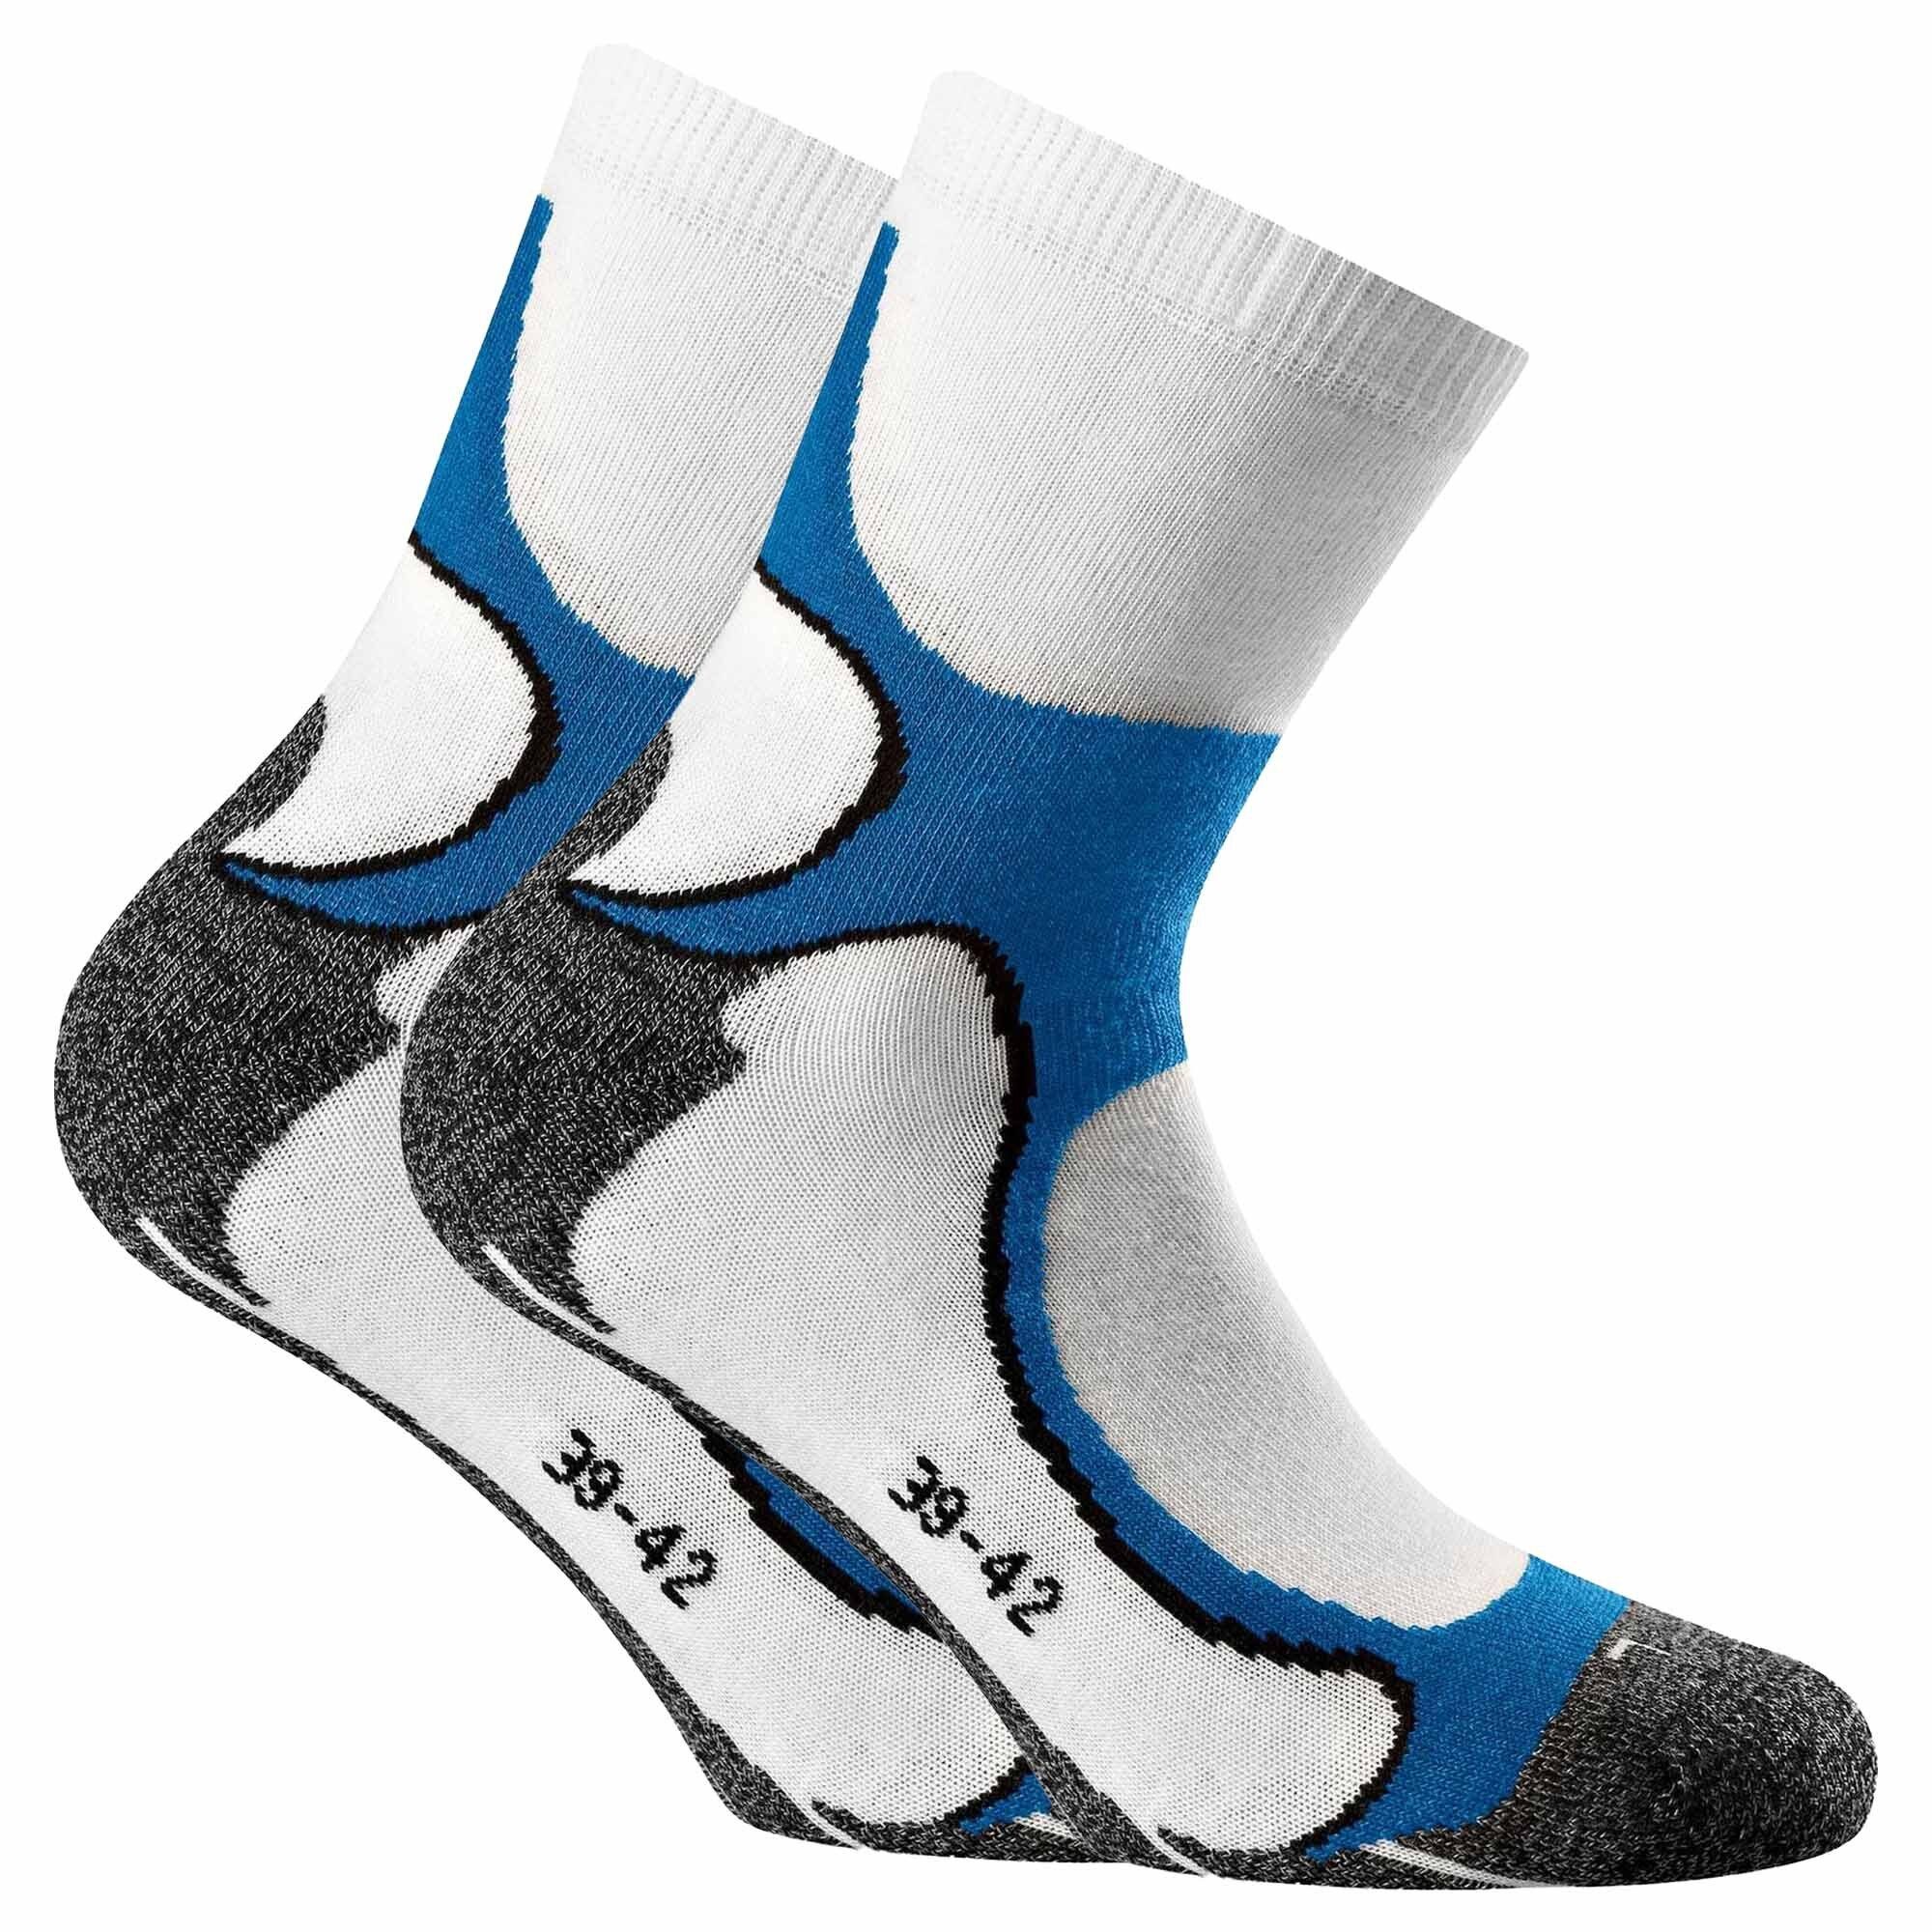 Rohner Socks Sportsocken Unisex Running Quarter Socken, 2er Pack - Weiß/Blau